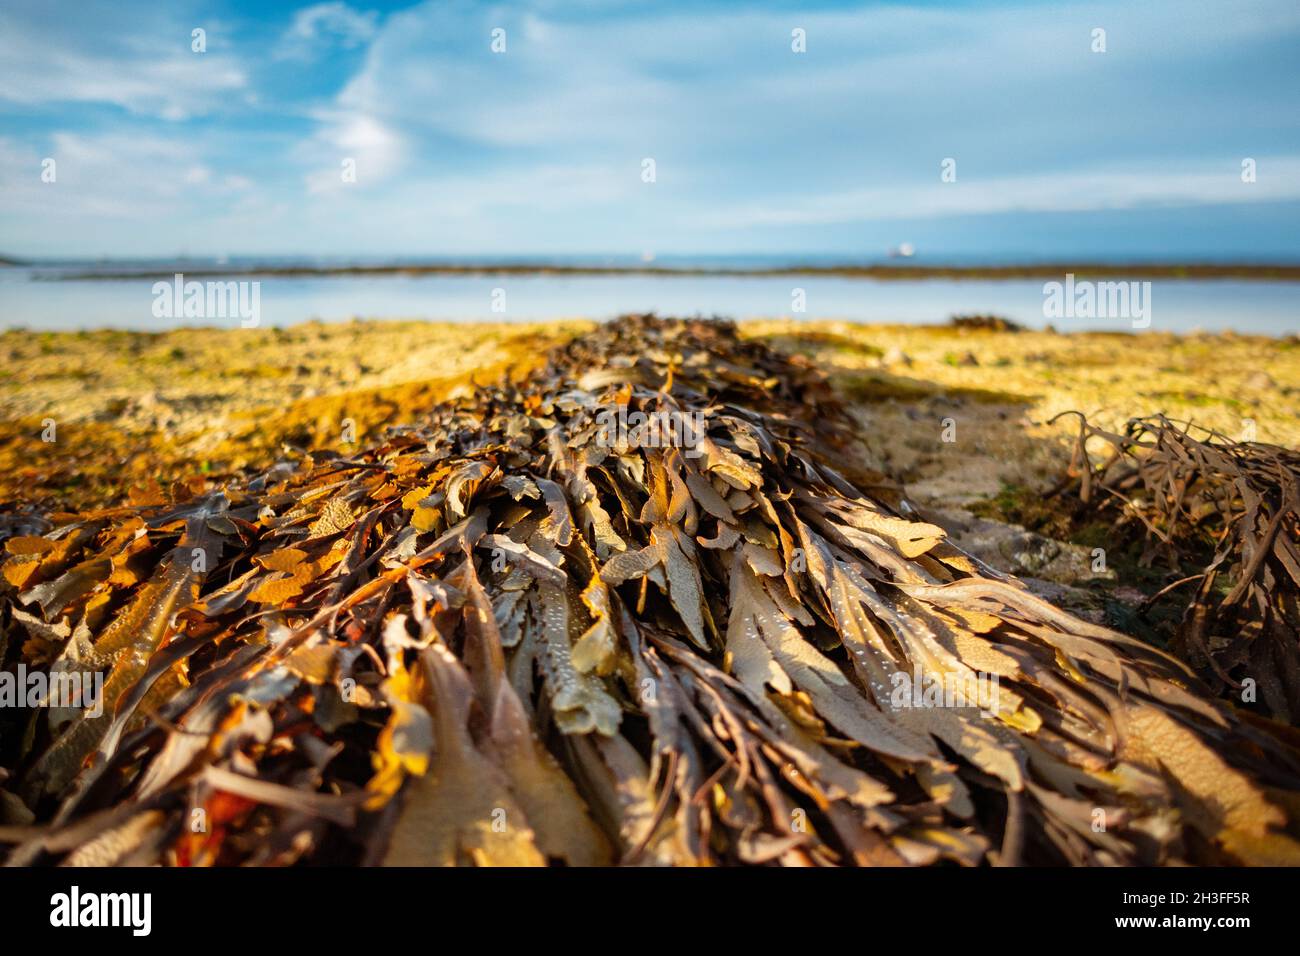 Close up, macro, small scale coastal landscape with serrated wrack seaweed at Bembridge, Isle of Wight, UK Stock Photo